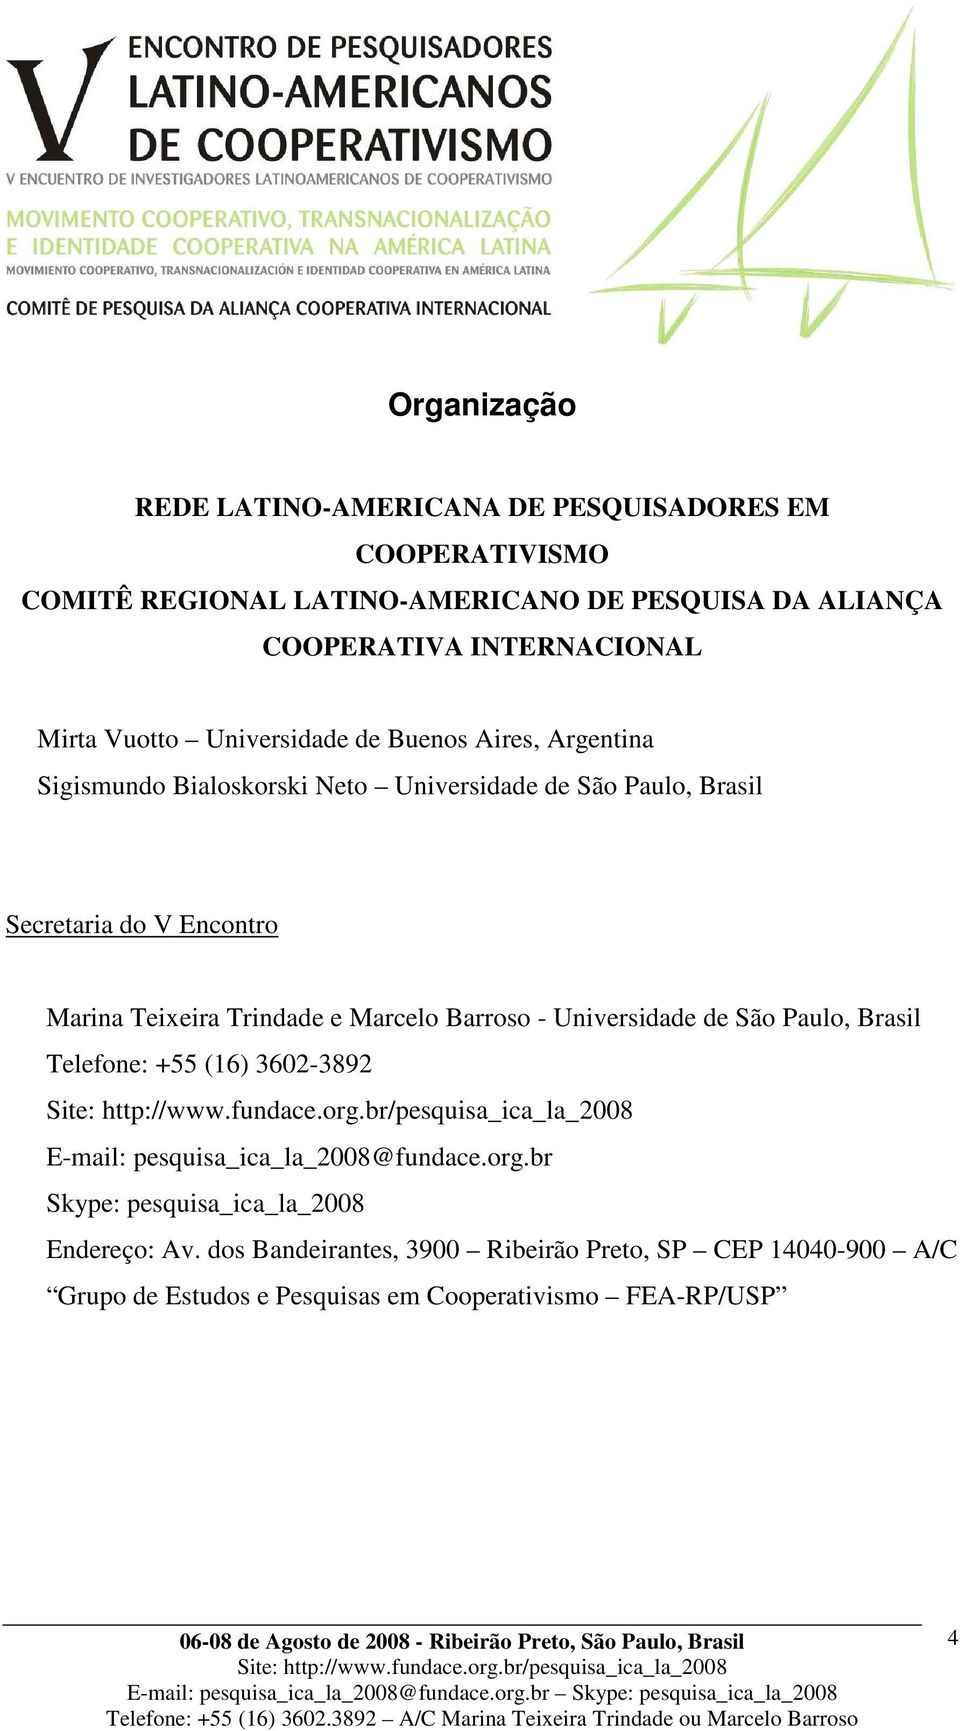 Teixeira Trindade e Marcelo Barroso - Universidade de São Paulo, Brasil Telefone: +55 (16) 3602-3892 E-mail: pesquisa_ica_la_2008@fundace.org.